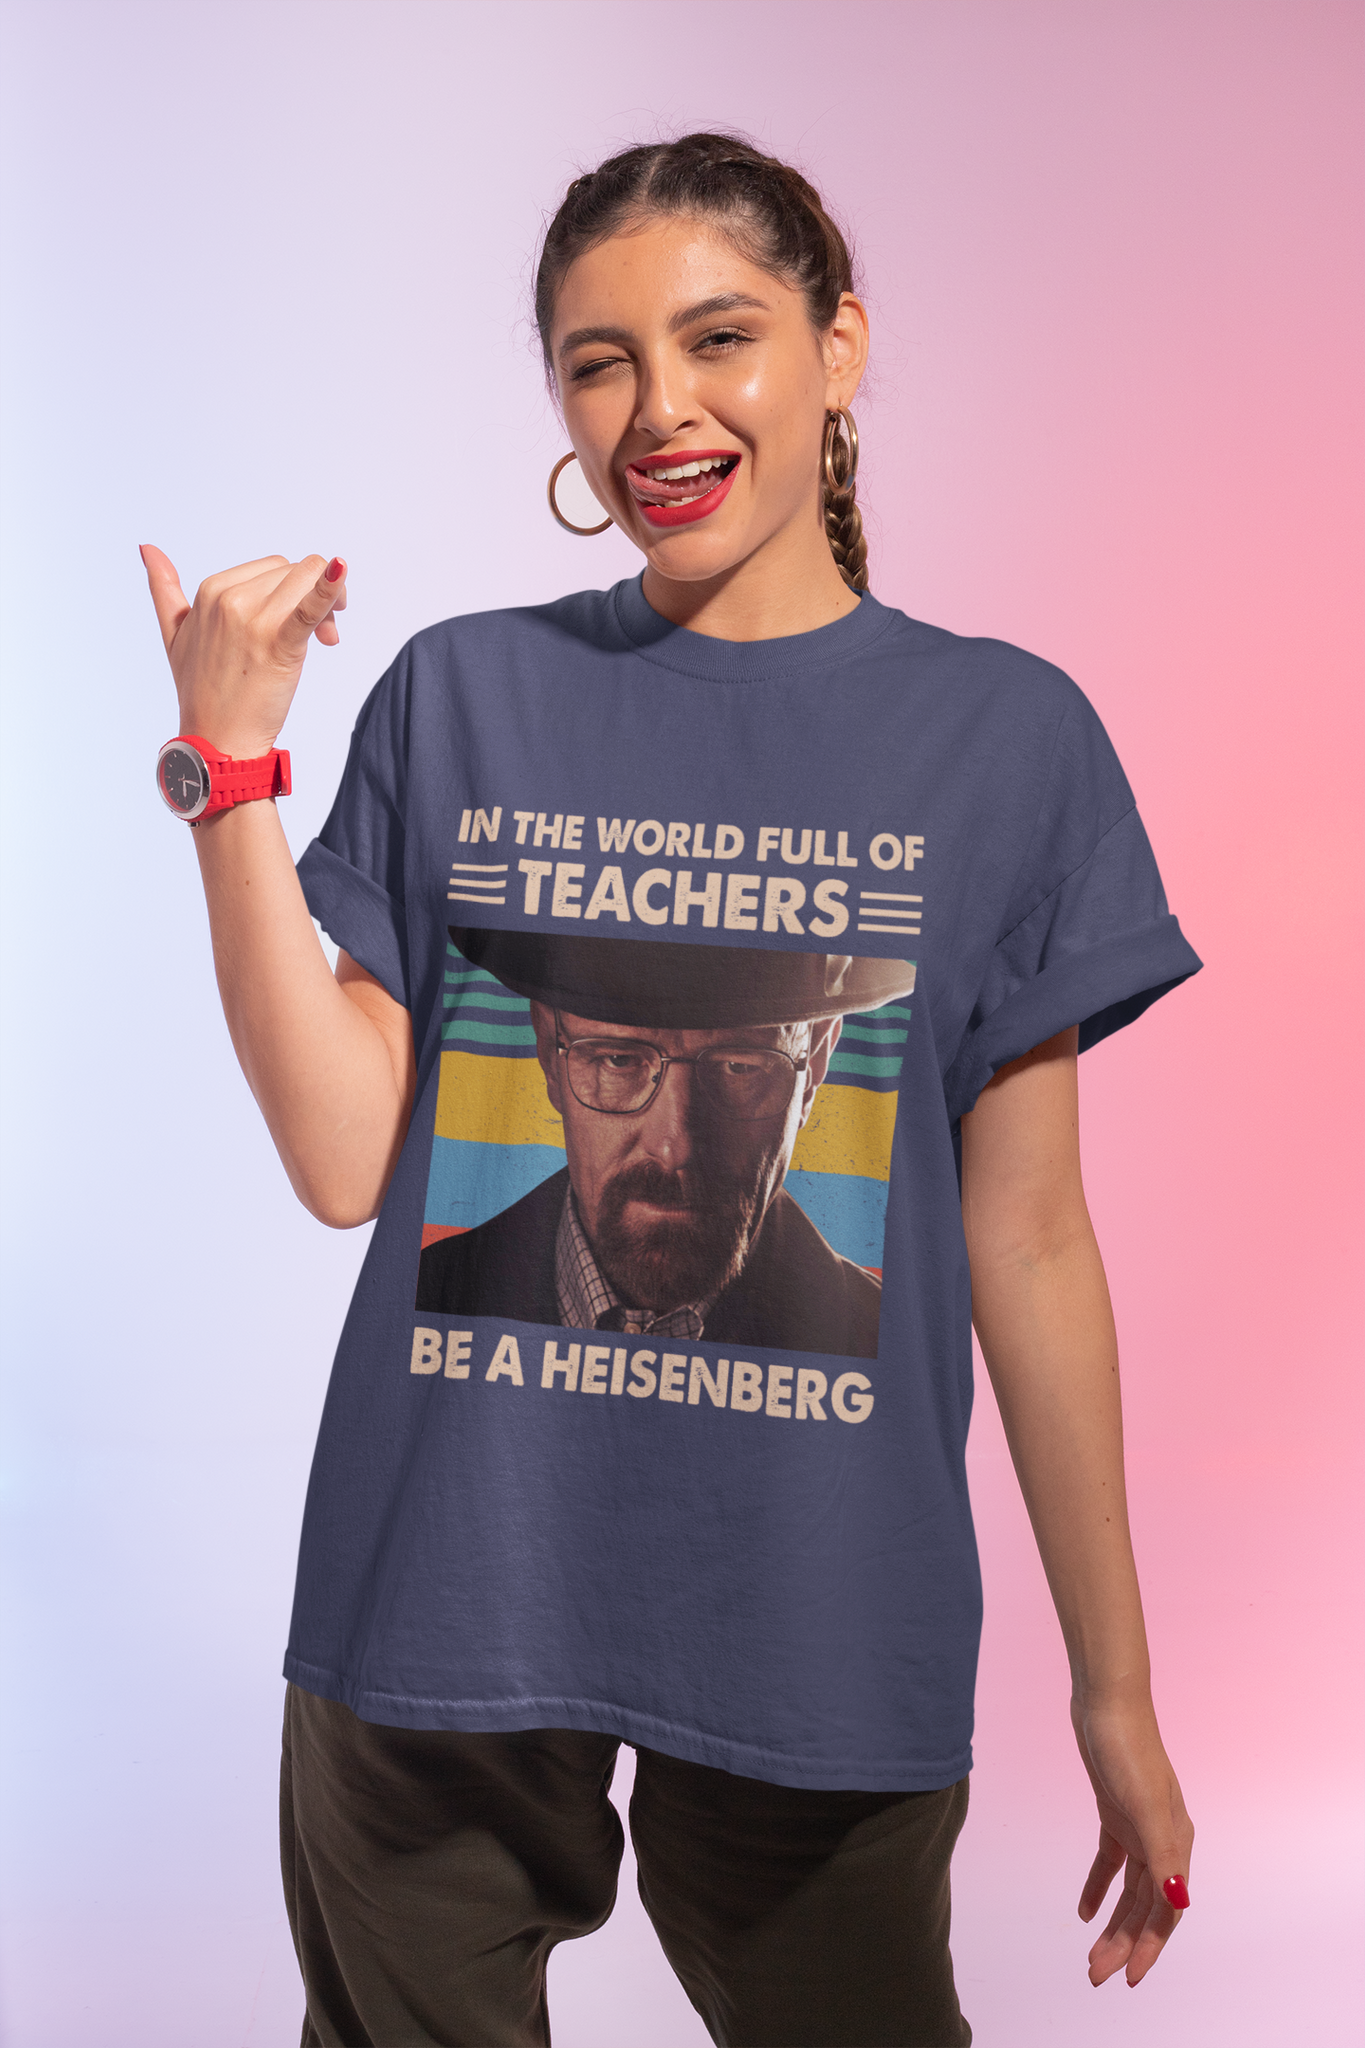 Breaking Bad Vintage T Shirt, Walter White T Shirt, In The World Full Of Teachers Be A Heisenberg Tshirt